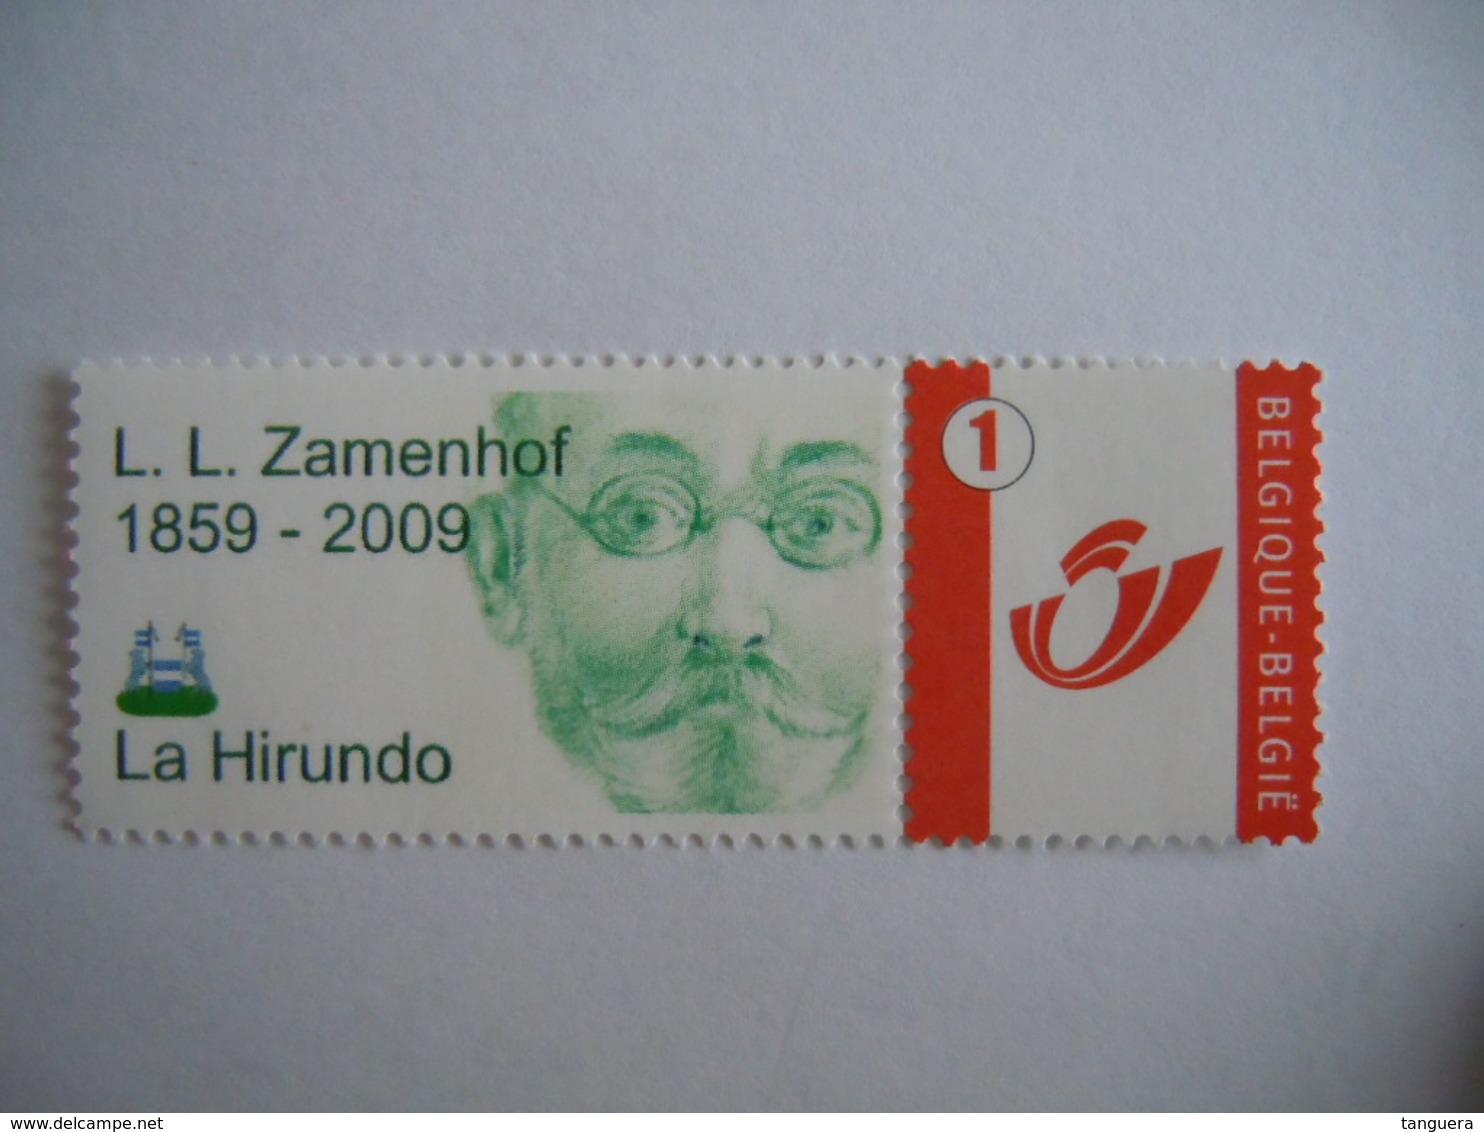 België Belgique 2007 Gepersonaliseerde Reeks Séries Personnalisées Zamenhof Esperanto Cob 3700 MNH ** - Unused Stamps